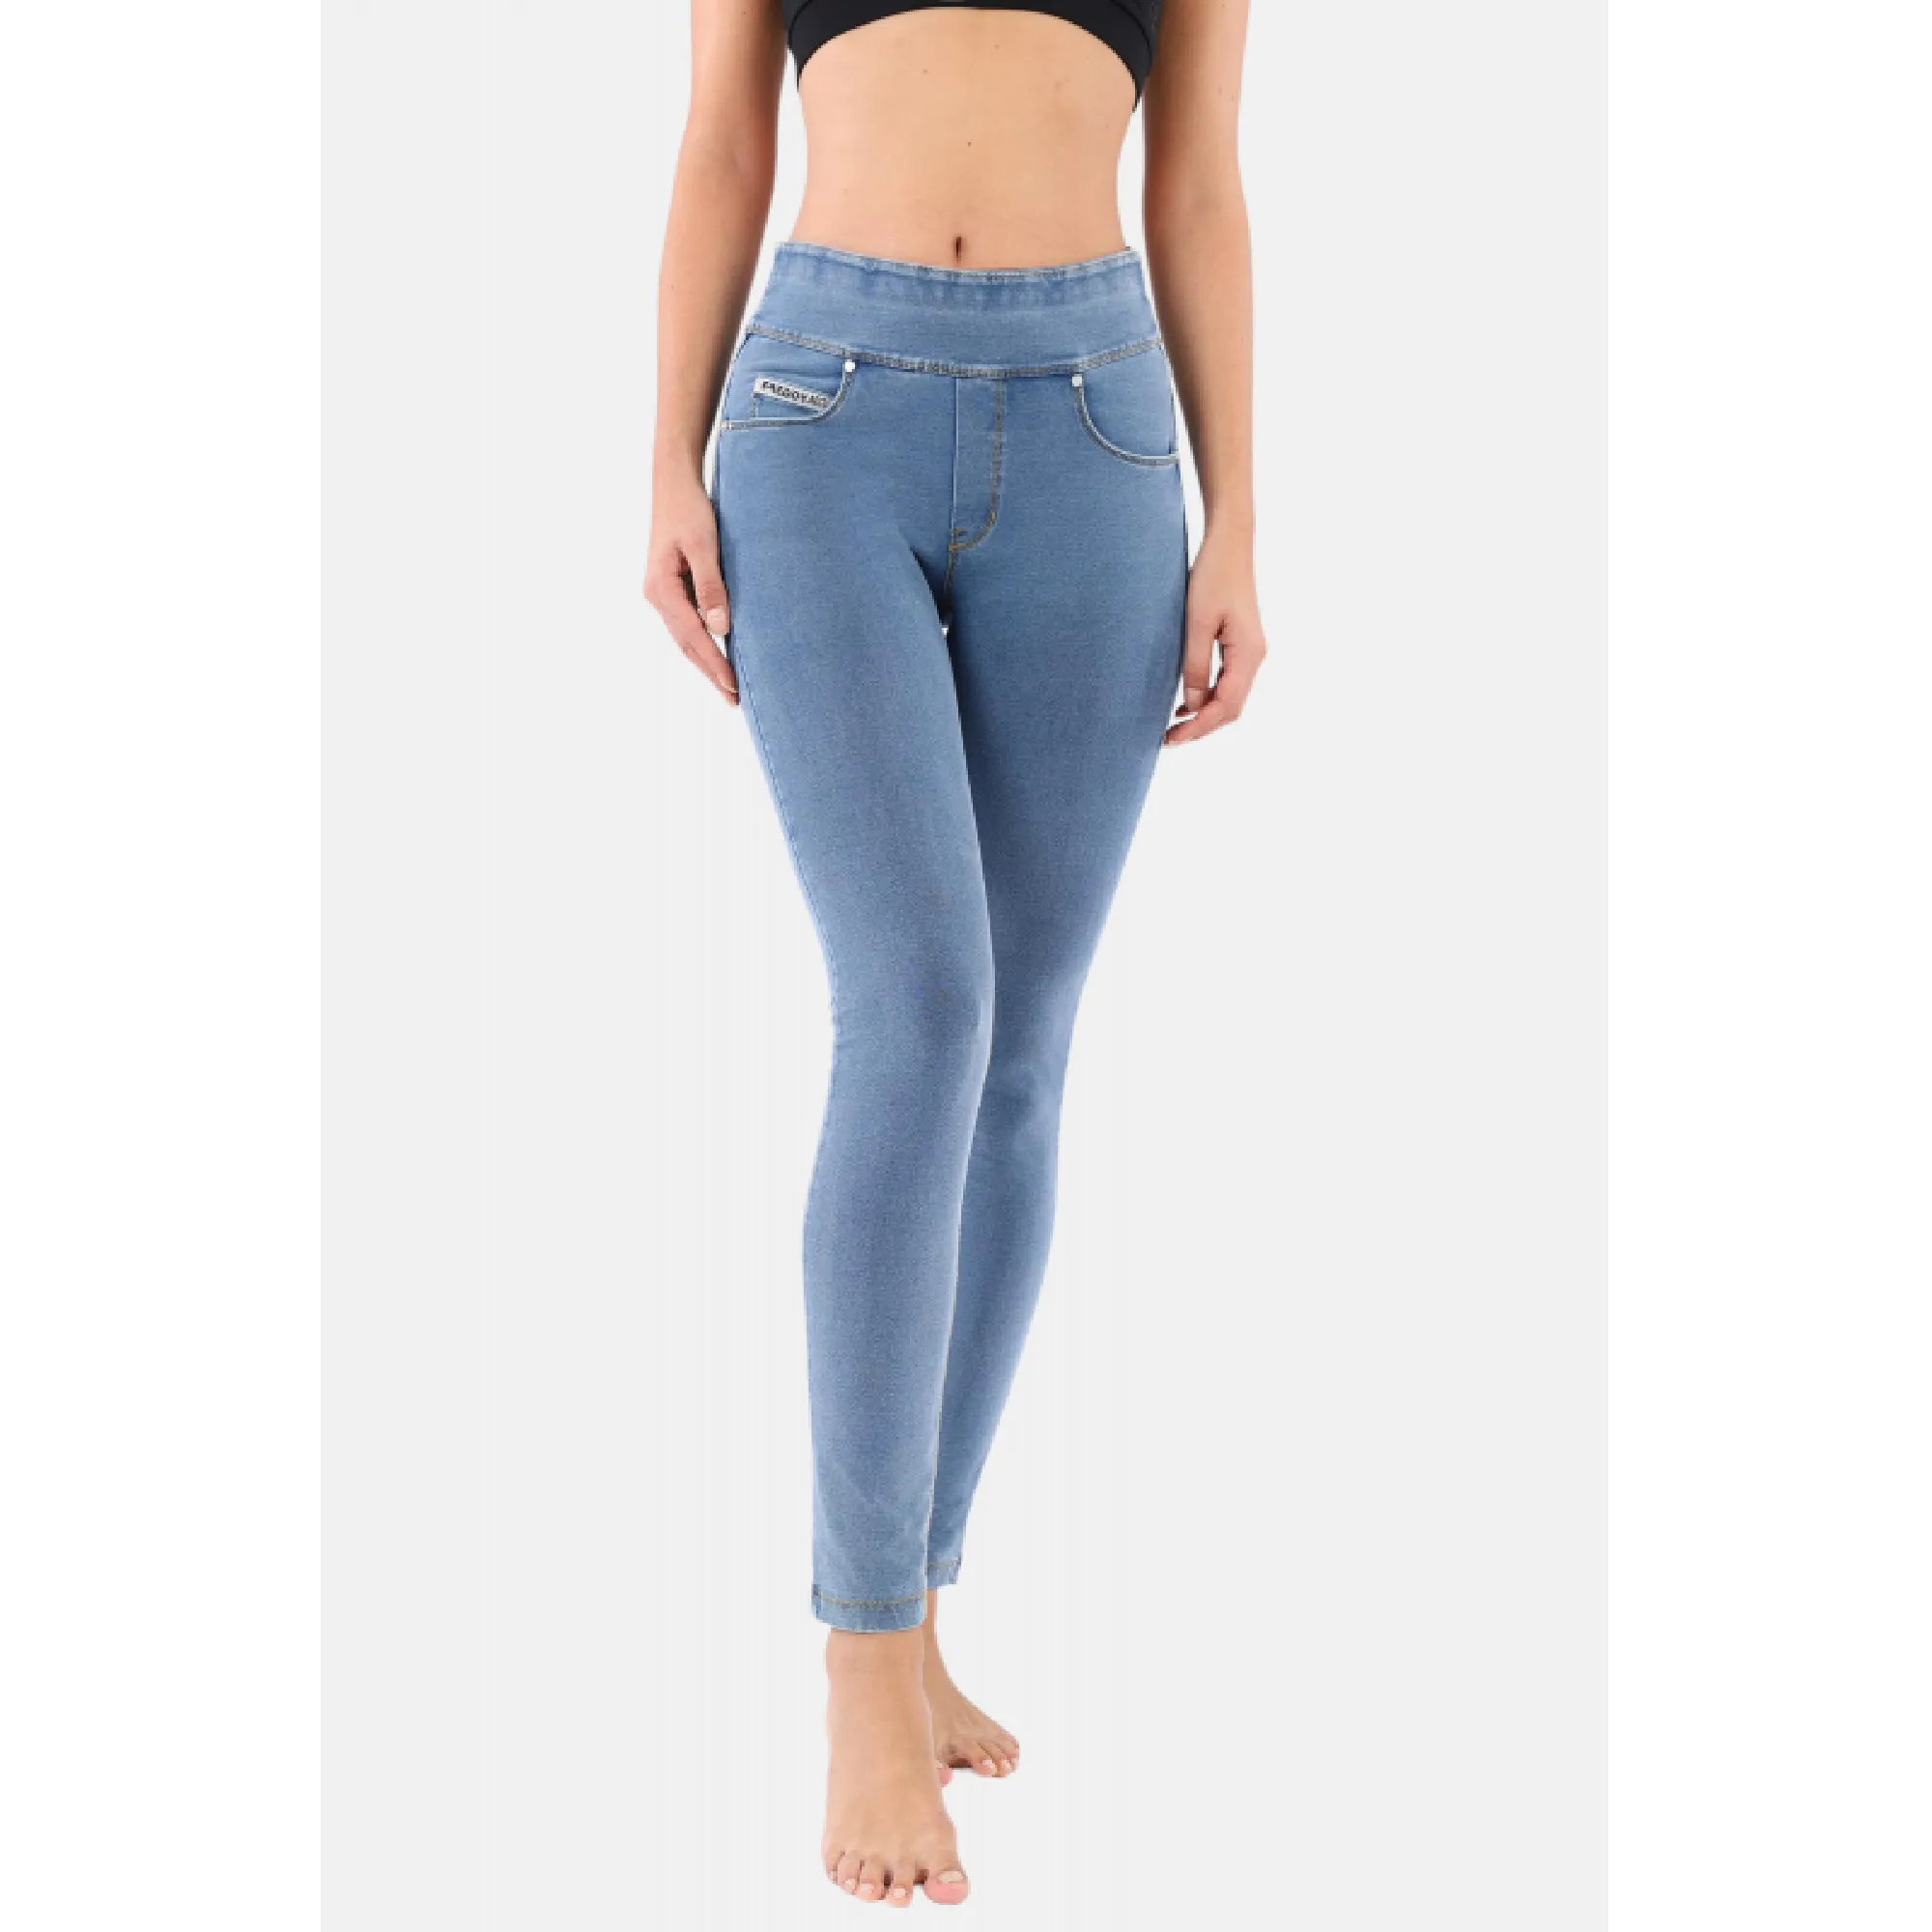 Freddy N.O.W.® Yoga Damen Comfort Jeans - Mid Waist Skinny - Hellblau - Gelbe Nähte - J4Y